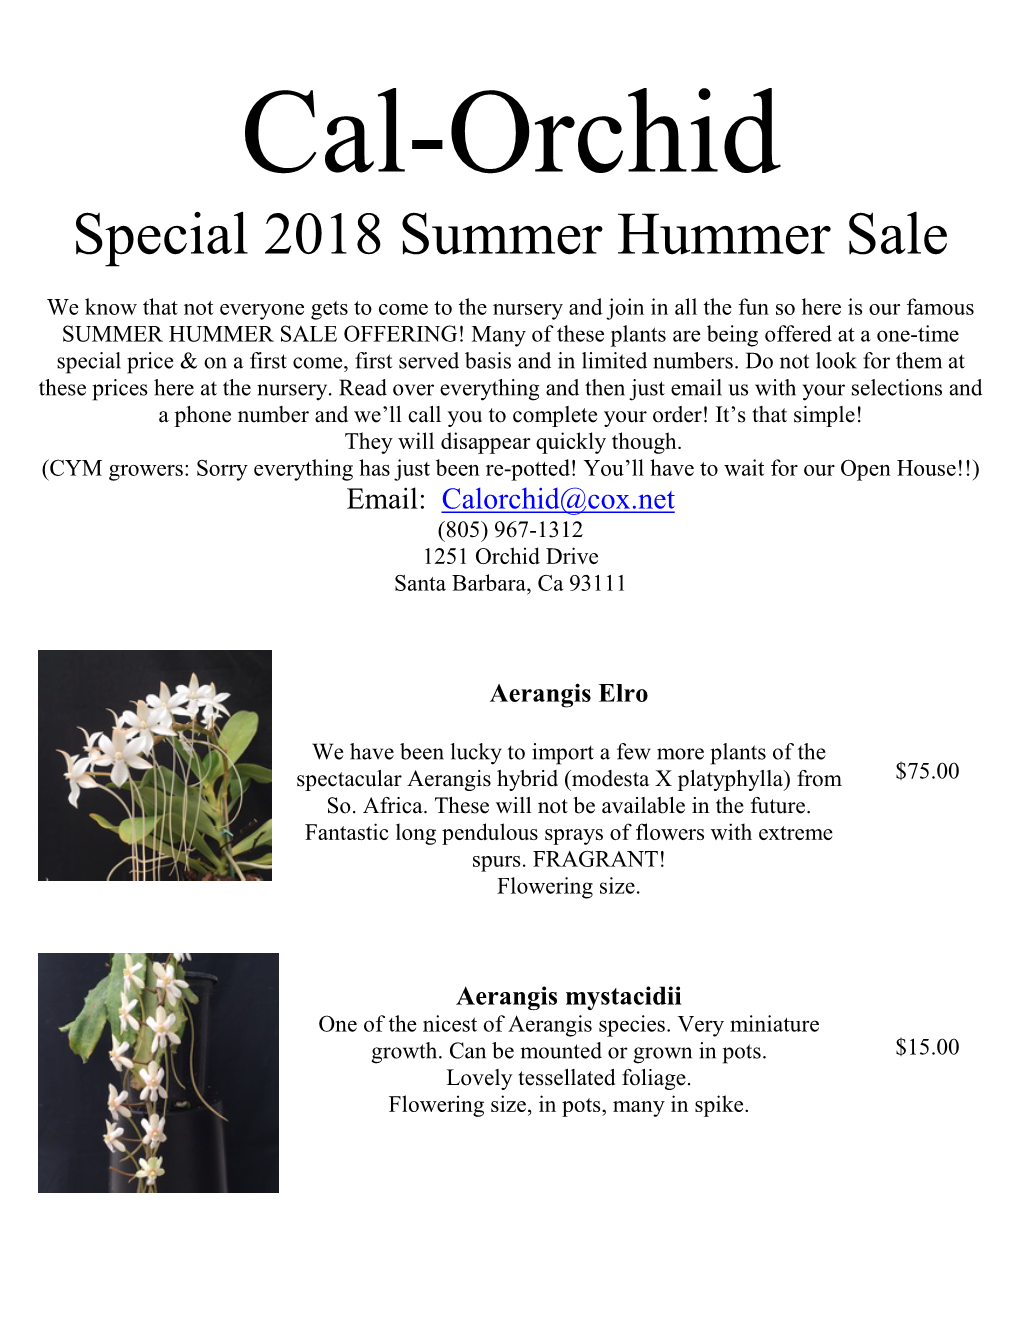 Special 2018 Summer Hummer Sale